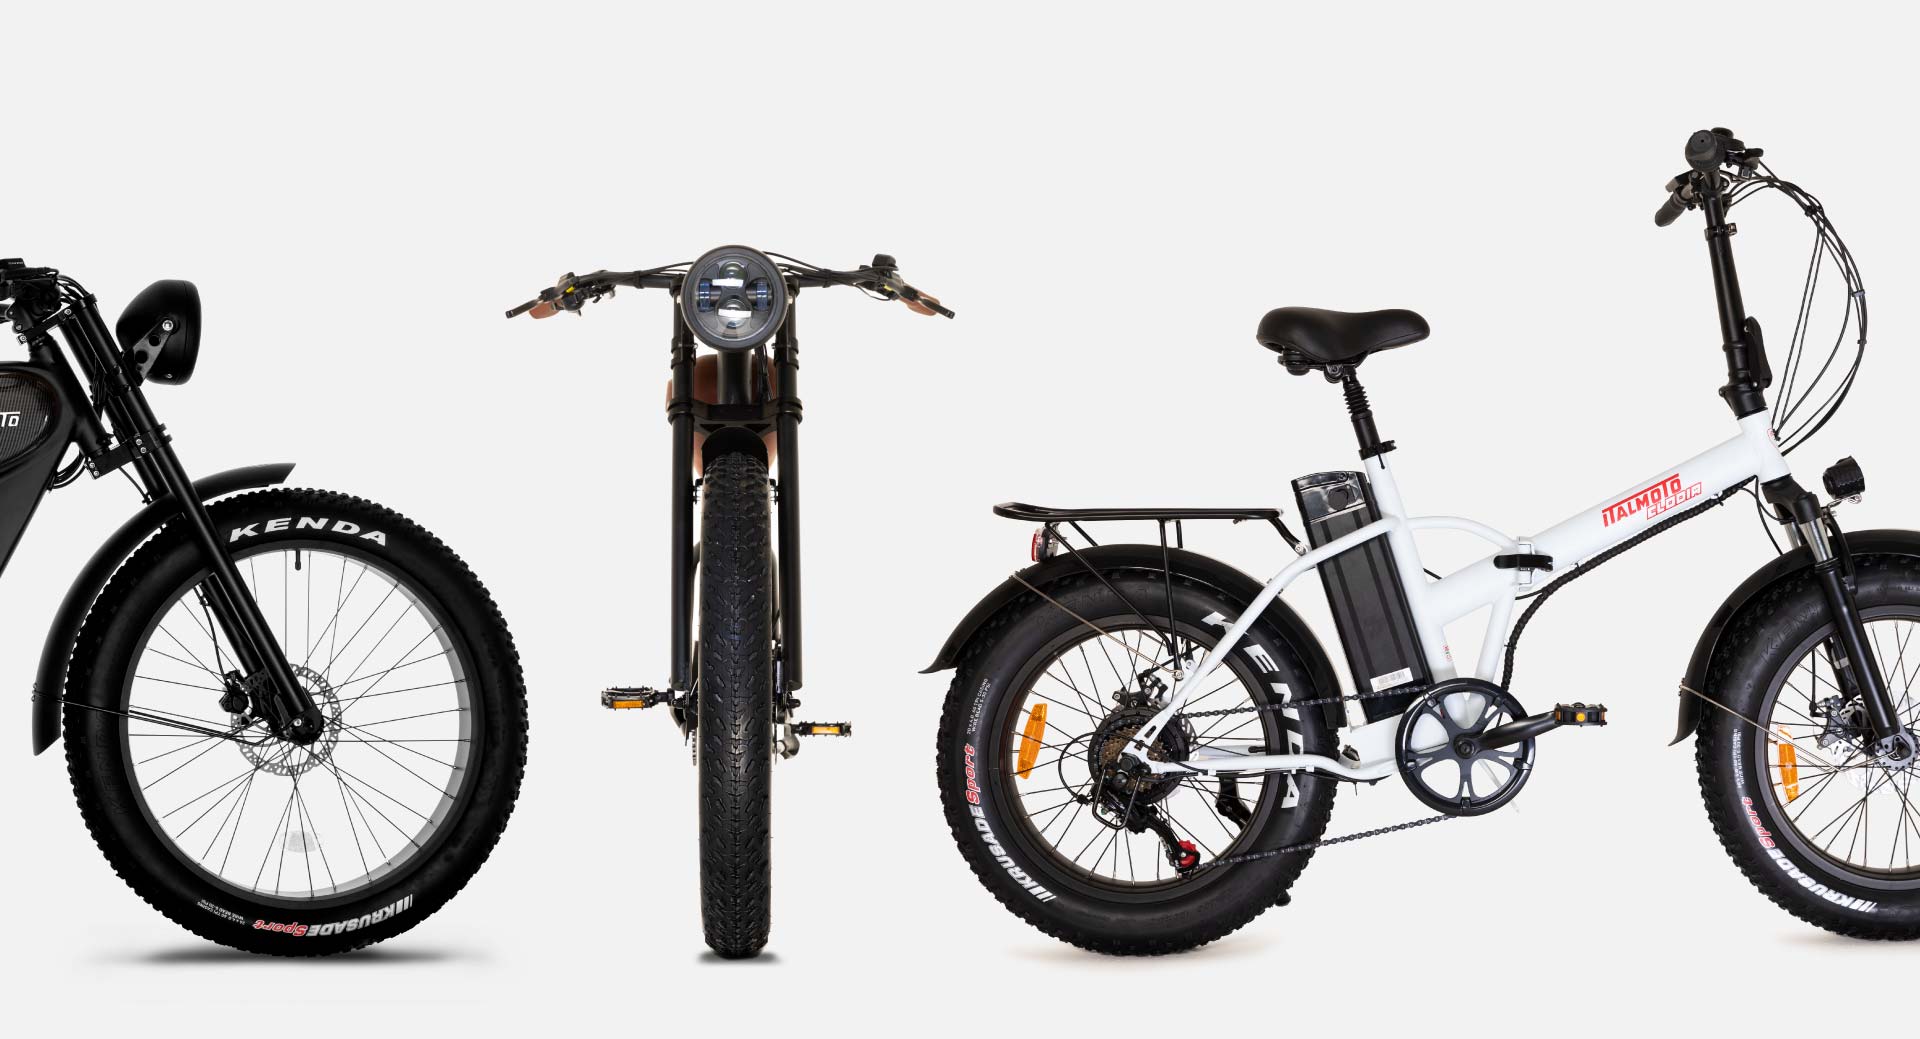 batterie litio biciclette bisogna caricarle ogni volta che si adopera